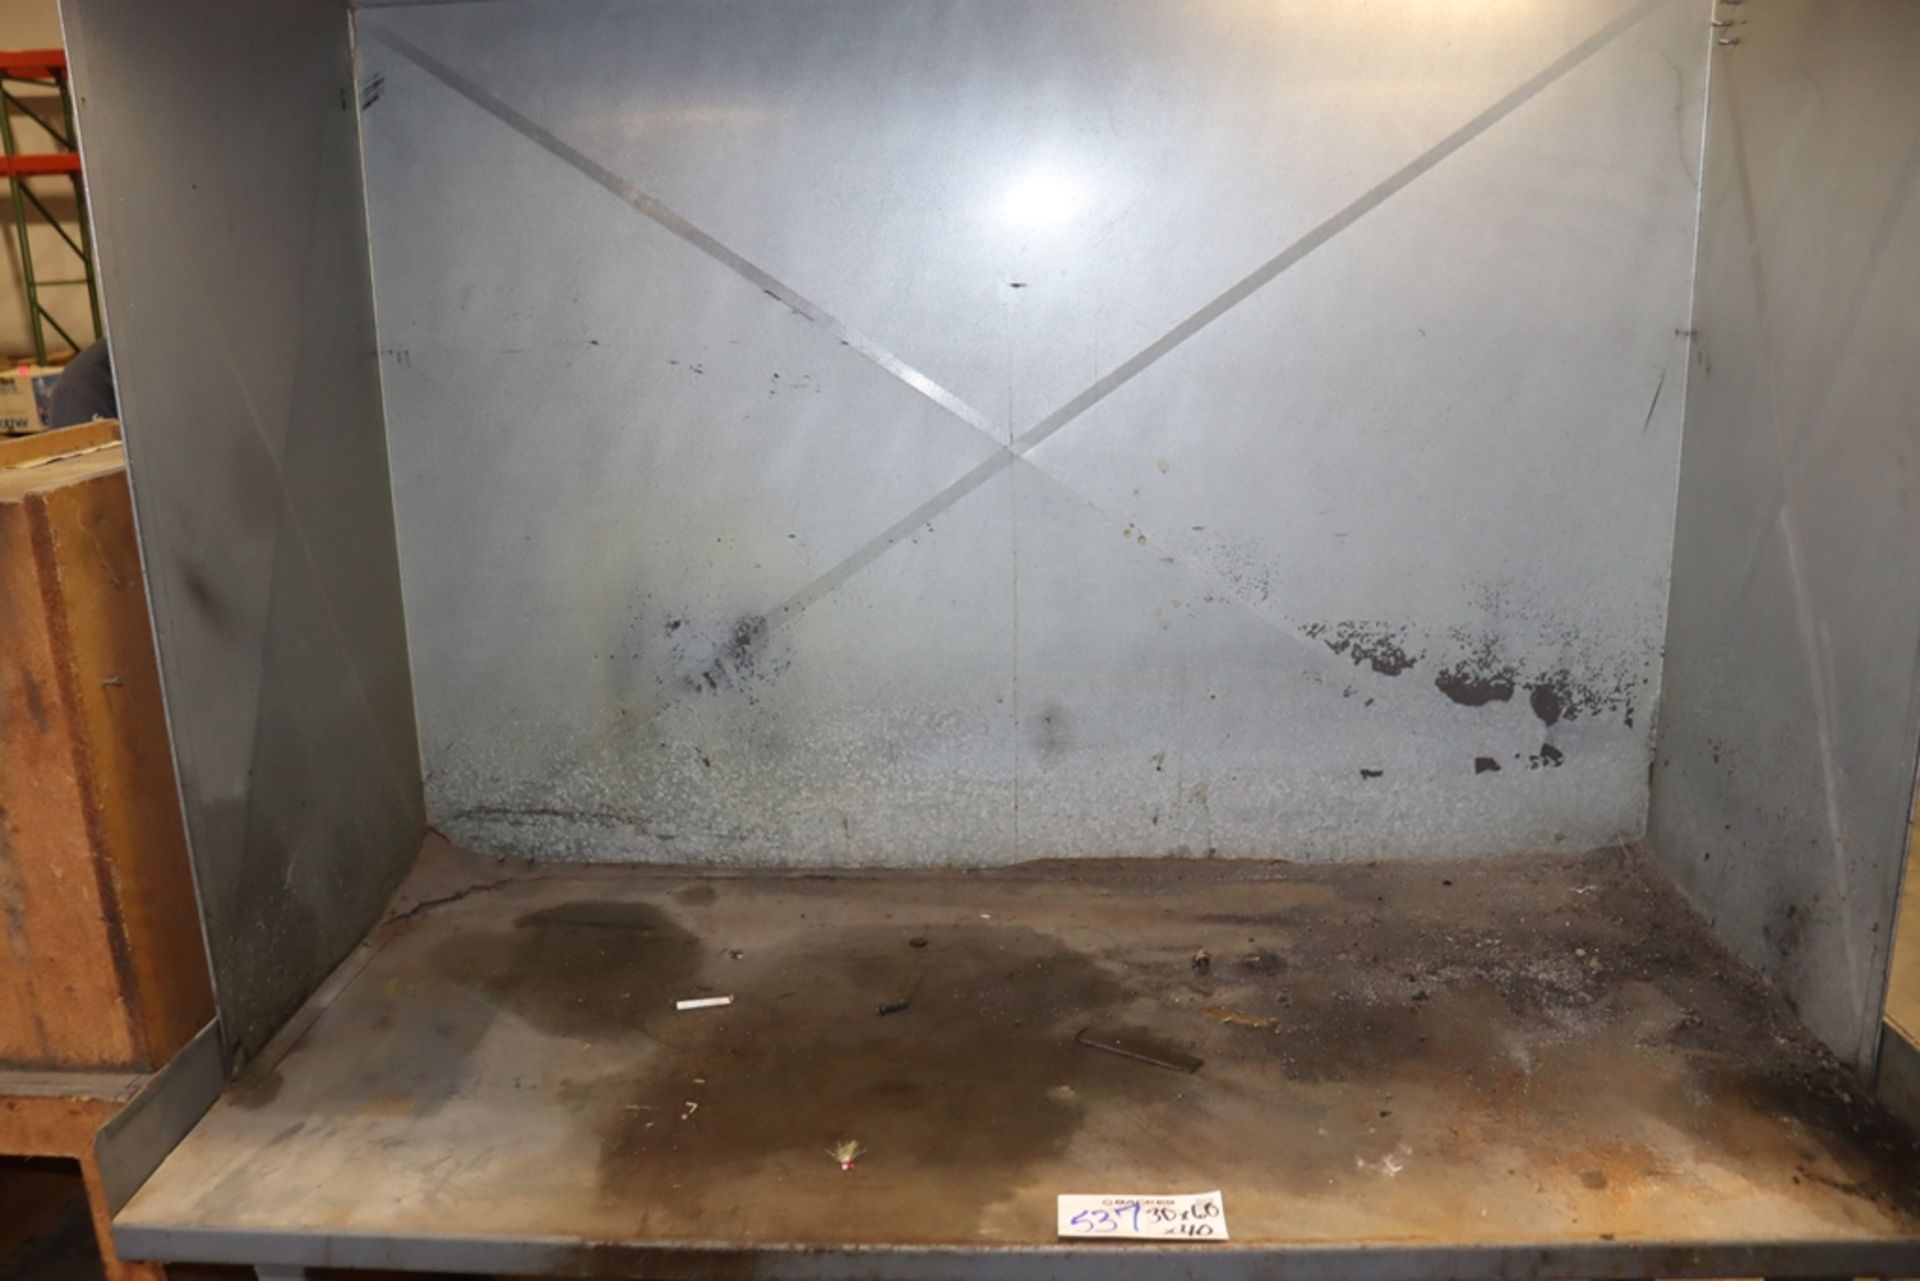 30" x 60" Galvanized spray booth w/ work table & blower - Bild 3 aus 6